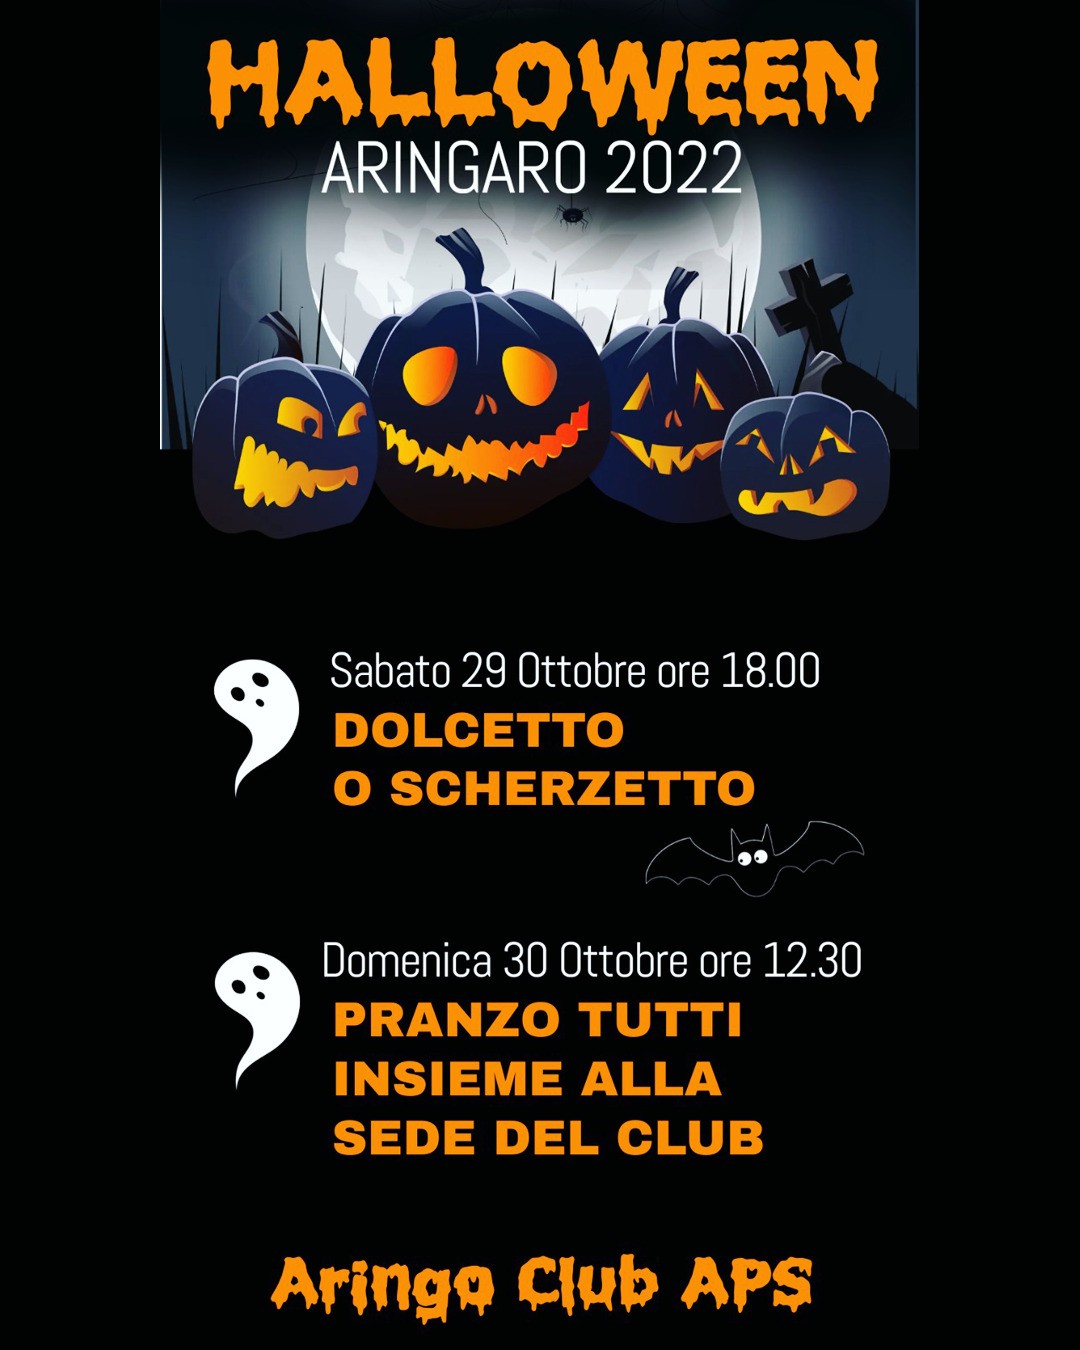 Vi aspettiamo questo fine settimana ad Aringo per celebrare insieme la festa di Halloween!
#aringo #aringoclub #aringoclub2022 #halloween #halloweentime #halloween2022 #aringodimontereale